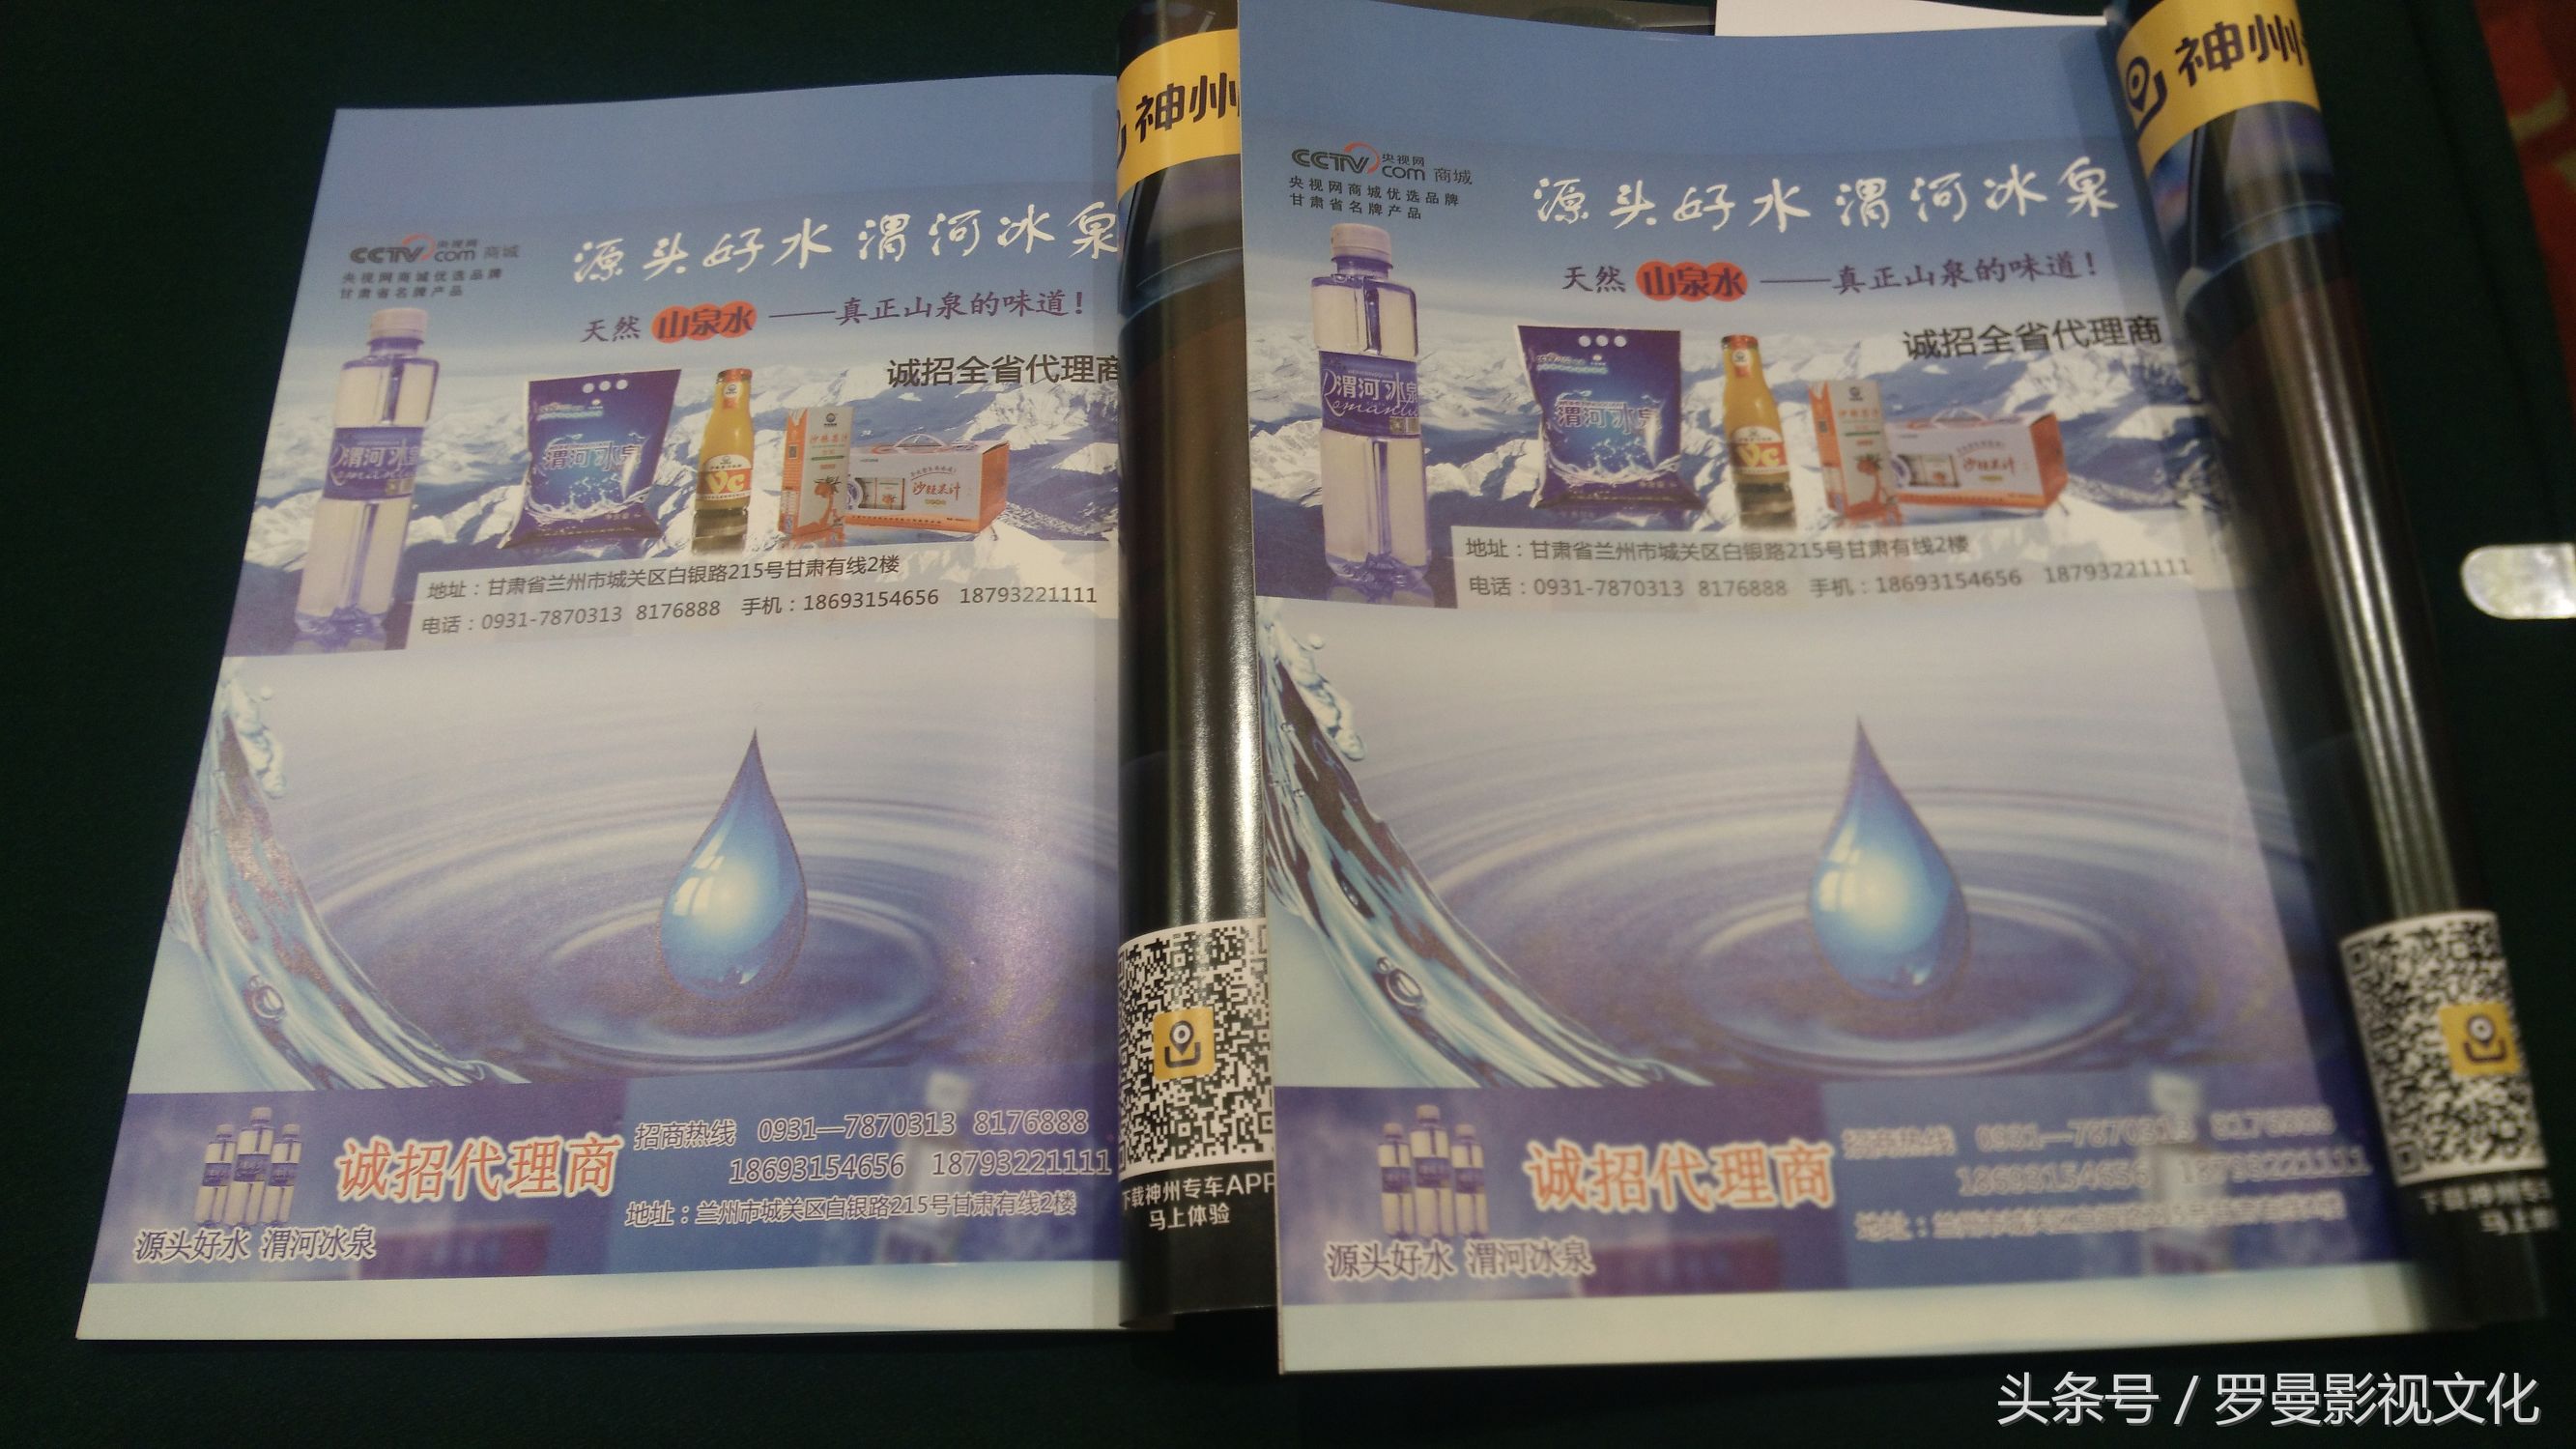 热烈祝贺渭河冰泉成为2017丝路文化产业发展高峰论坛指定用水